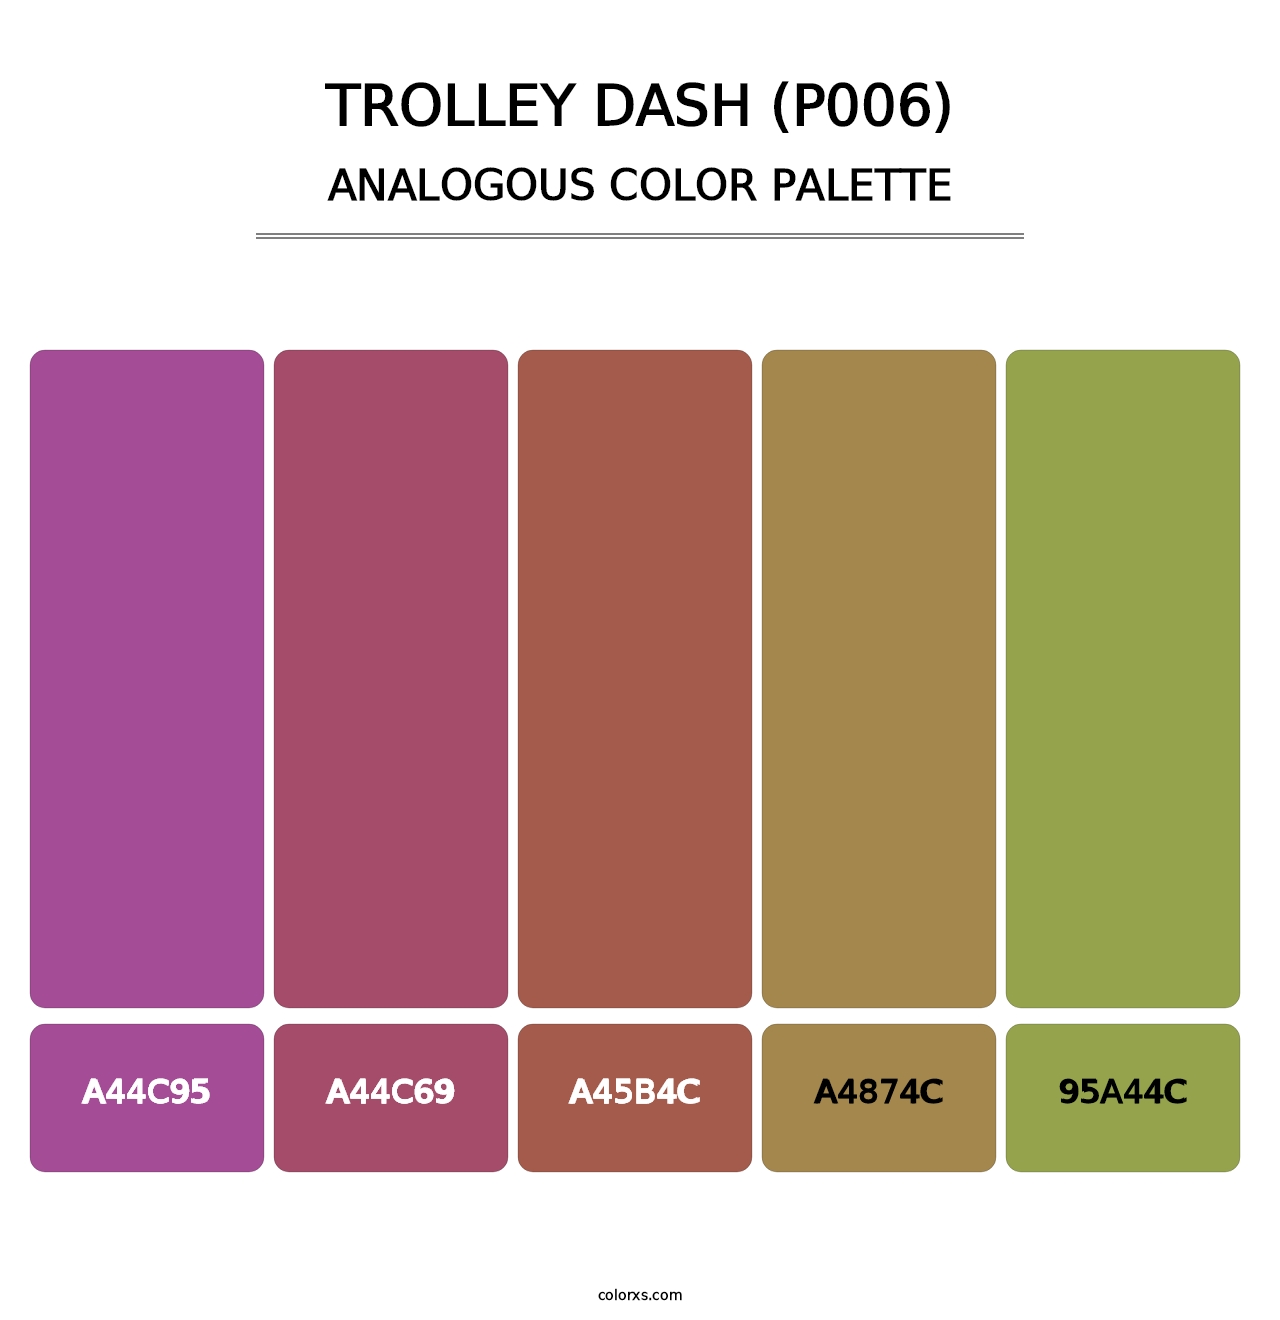 Trolley Dash (P006) - Analogous Color Palette